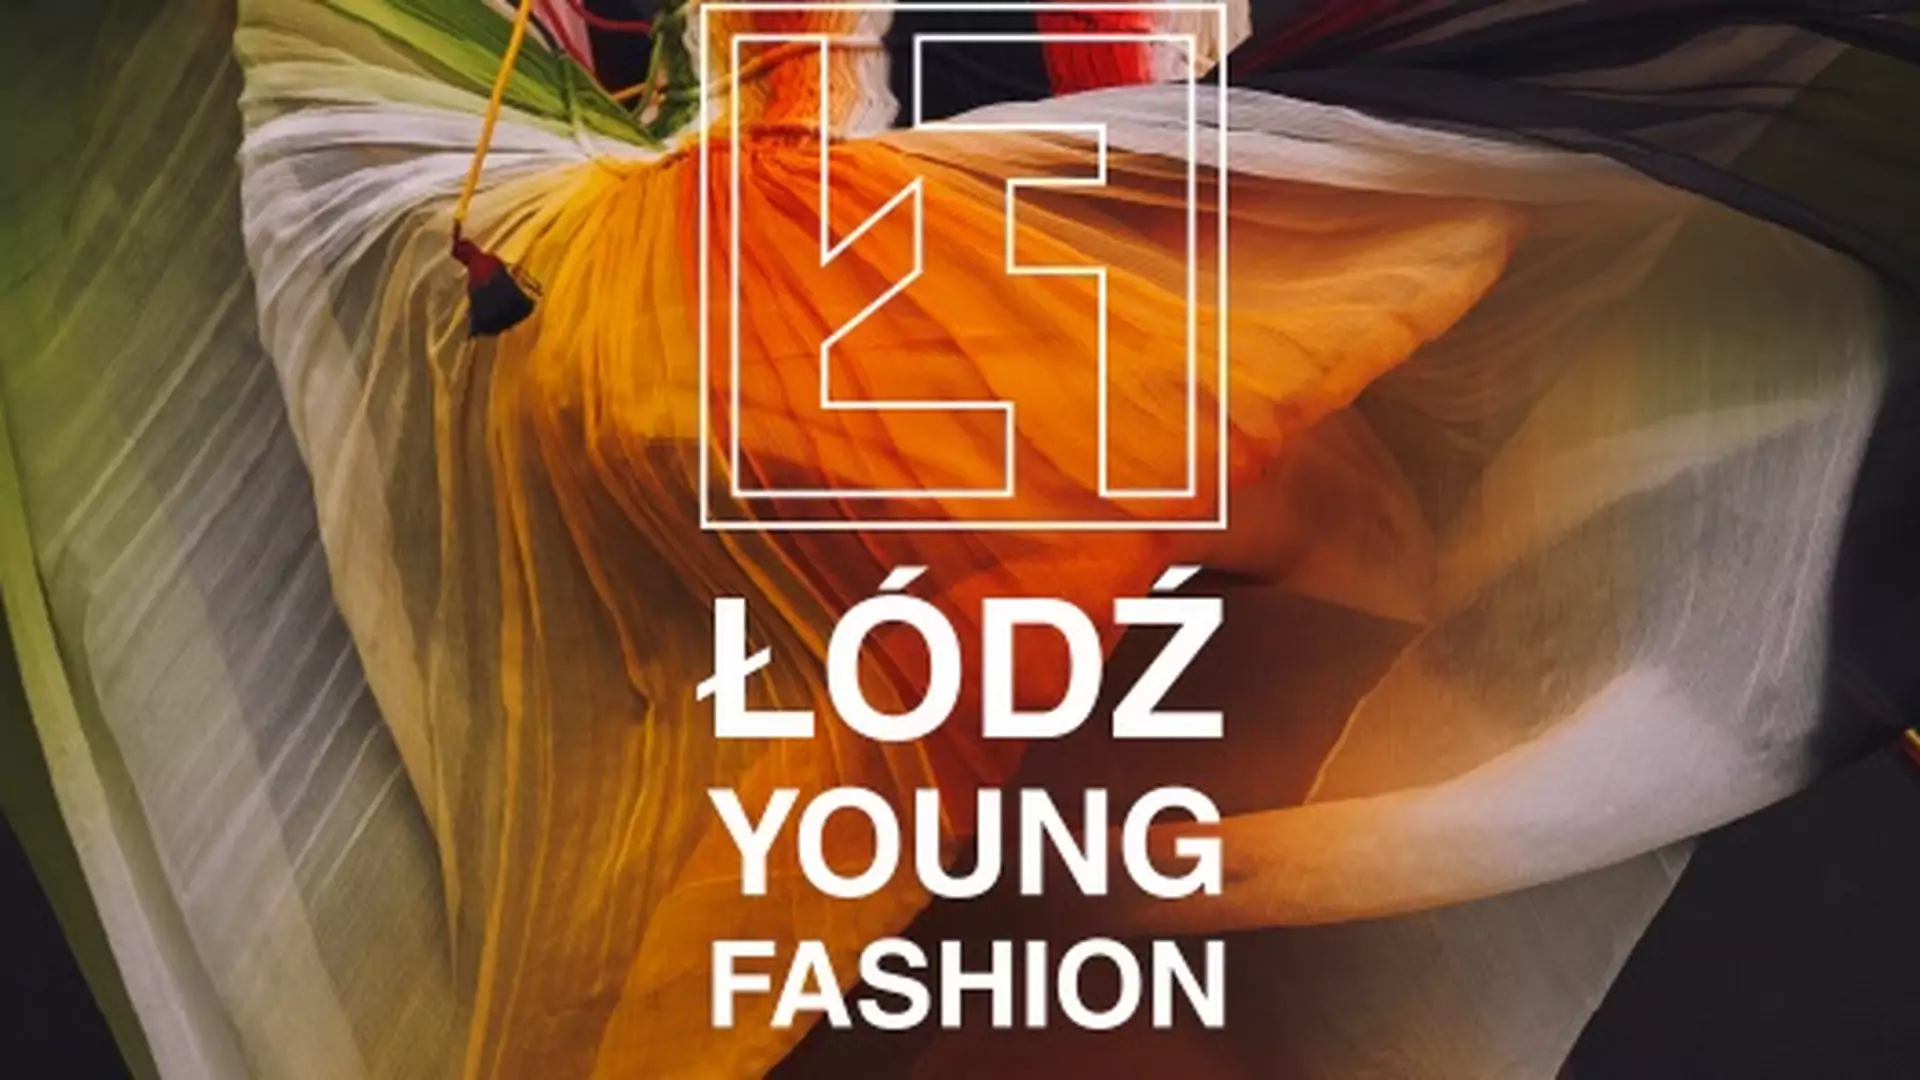 Kolejna szansa dla młodych projektantów. Ruszył nabór do Łódź Young Fashion 2017